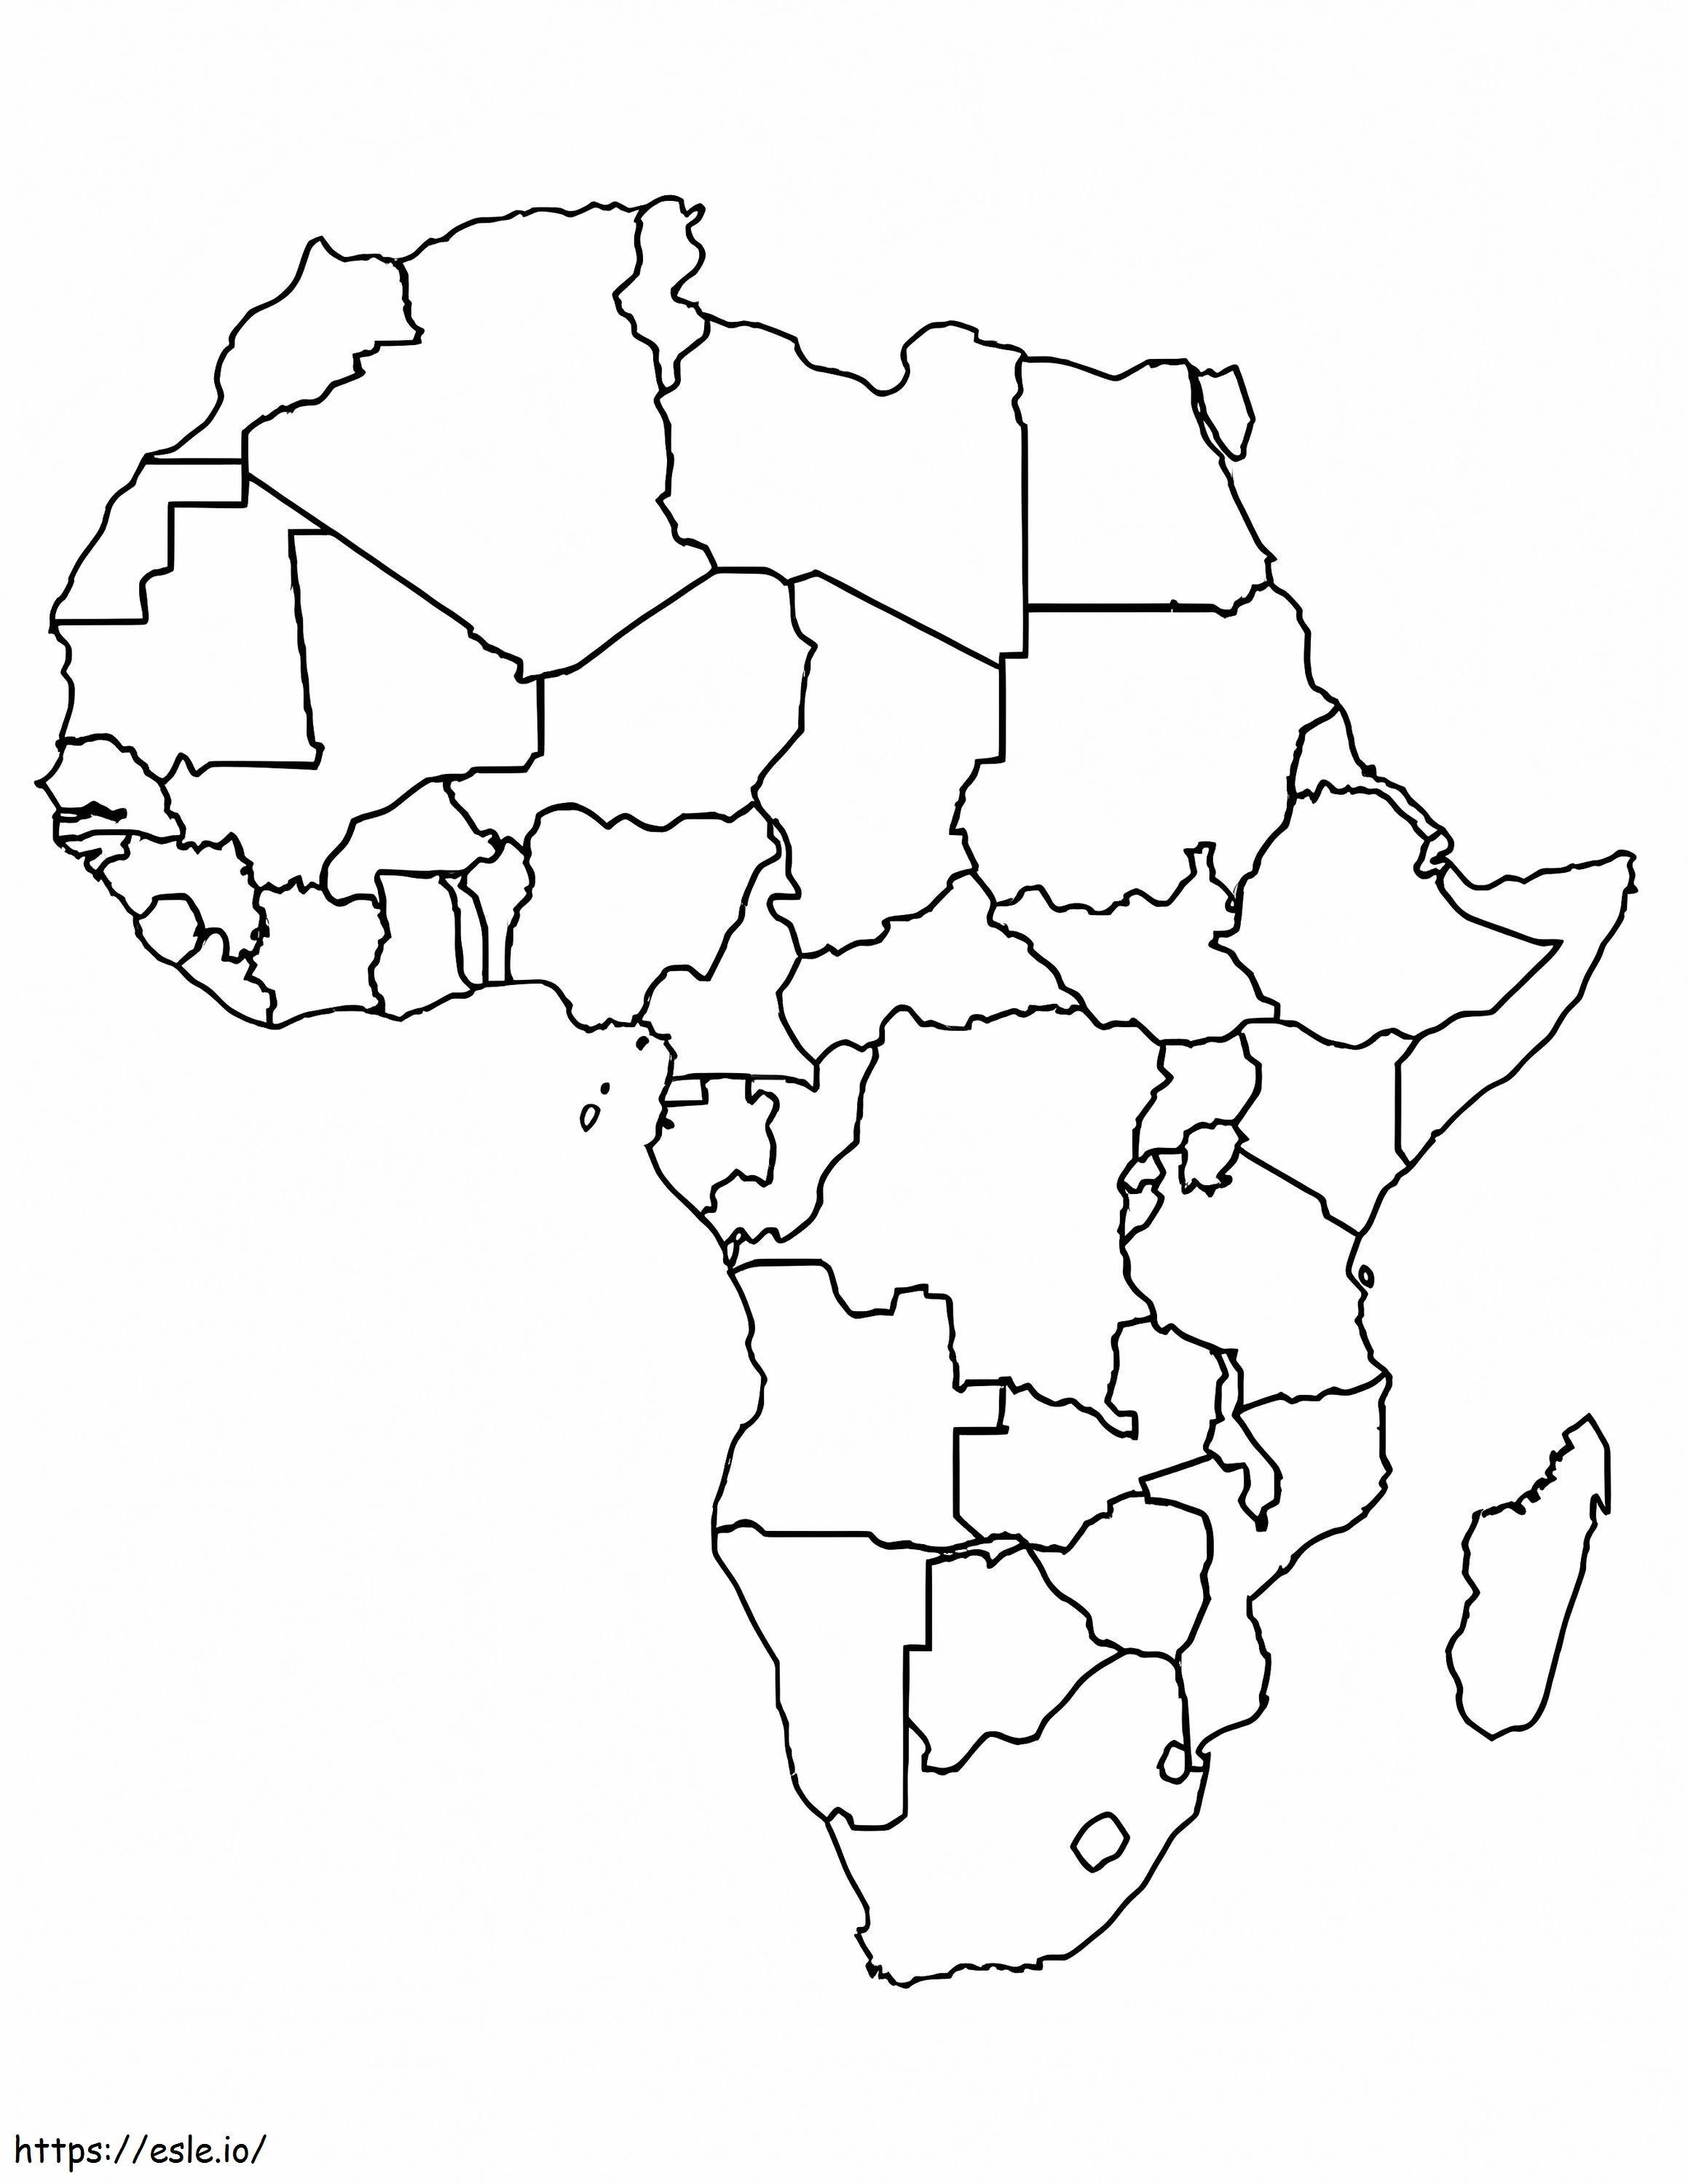 Darmowa mapa Afryki do wydrukowania kolorowanka